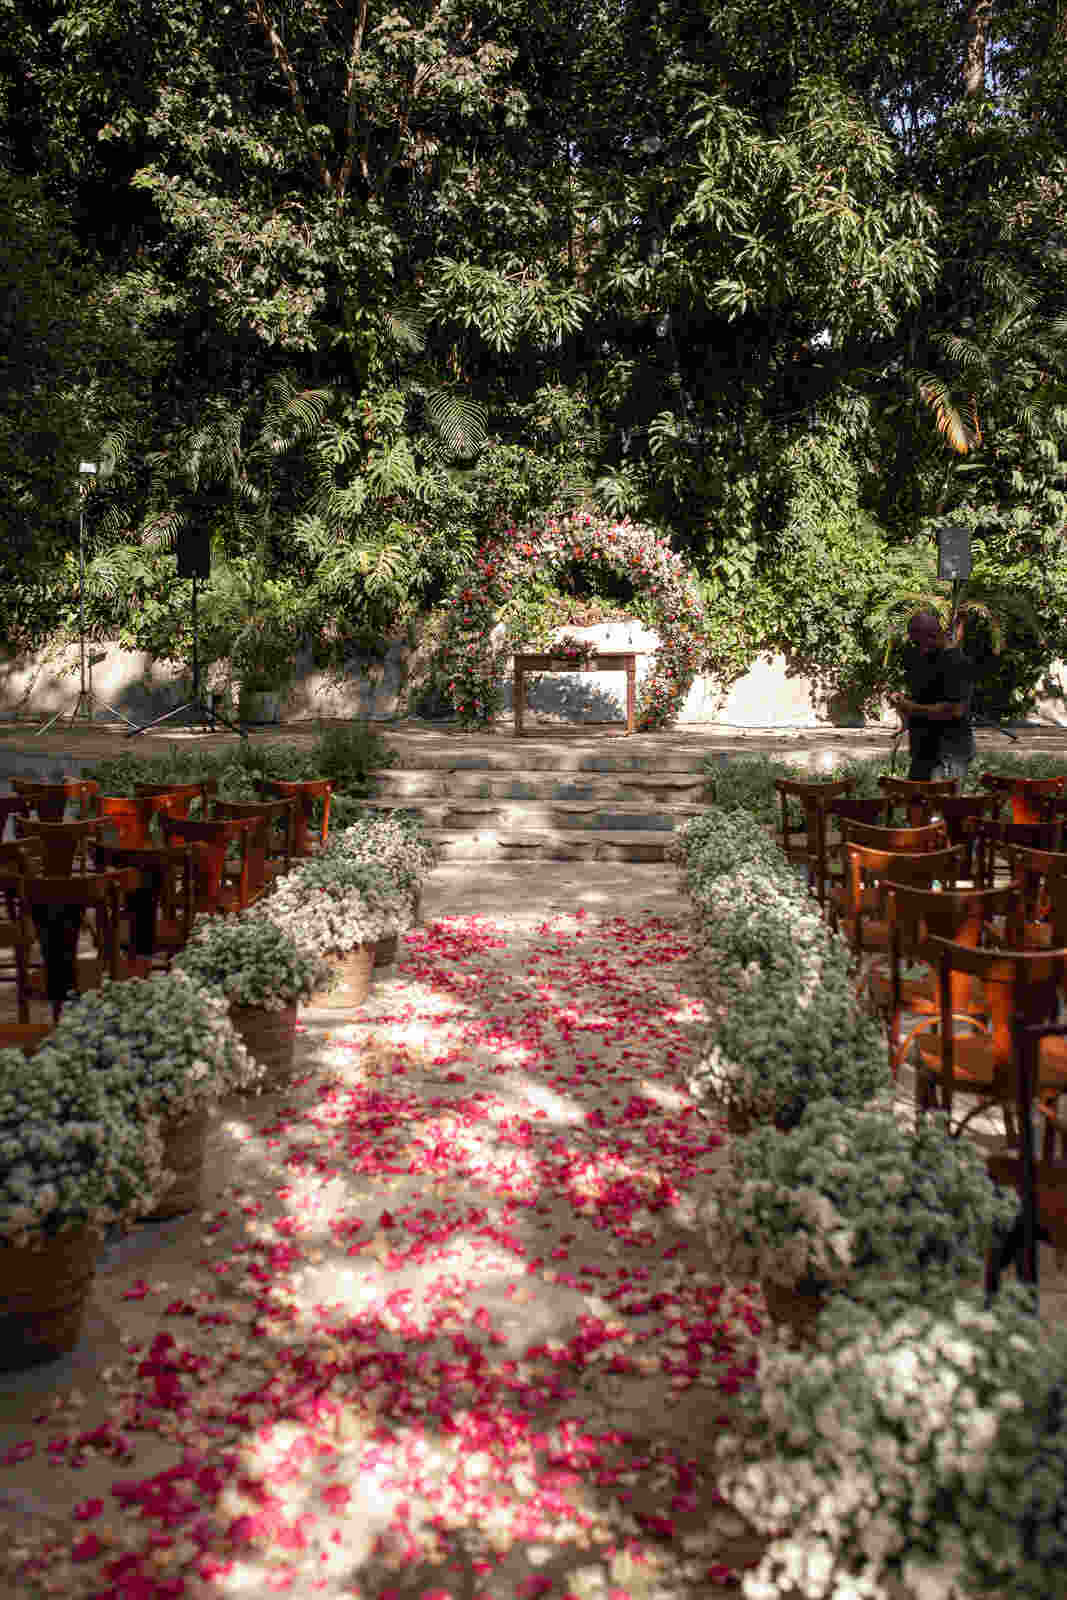 cadeiras de maderias no jardim decorado com flores brancas e pétalas cor de rosa no chão